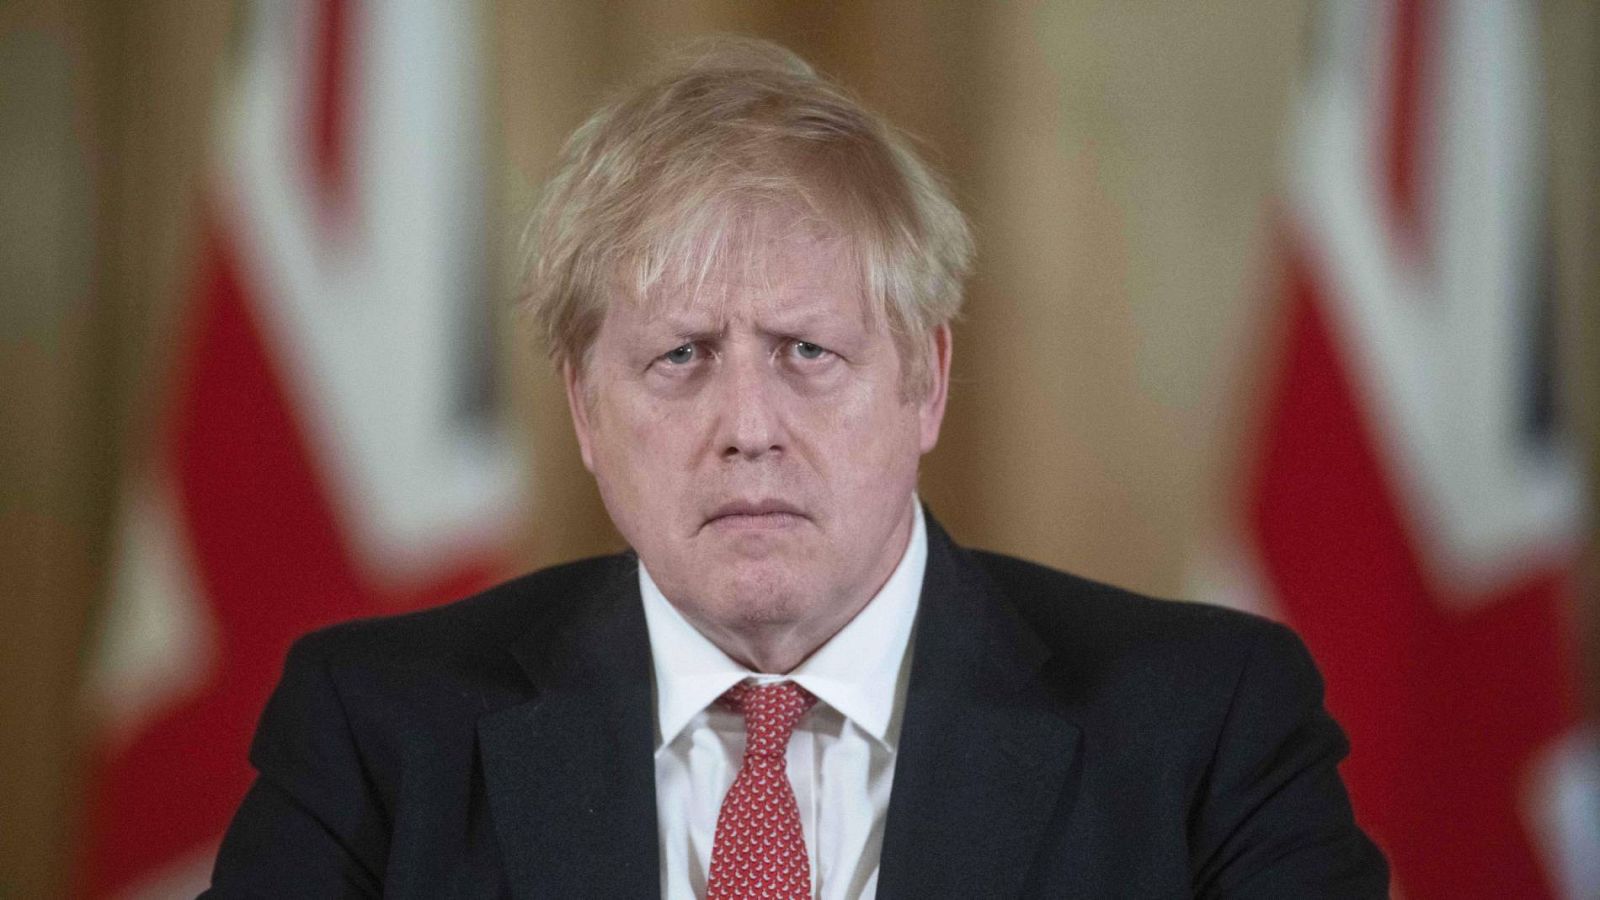 El primer ministro británico, Boris Johnson, permanece en la unidad de cuidados intensivos (UCI) de un hospital londinense tras empeorar su estado de salud a causa del coronavirus. Sin embargo, según